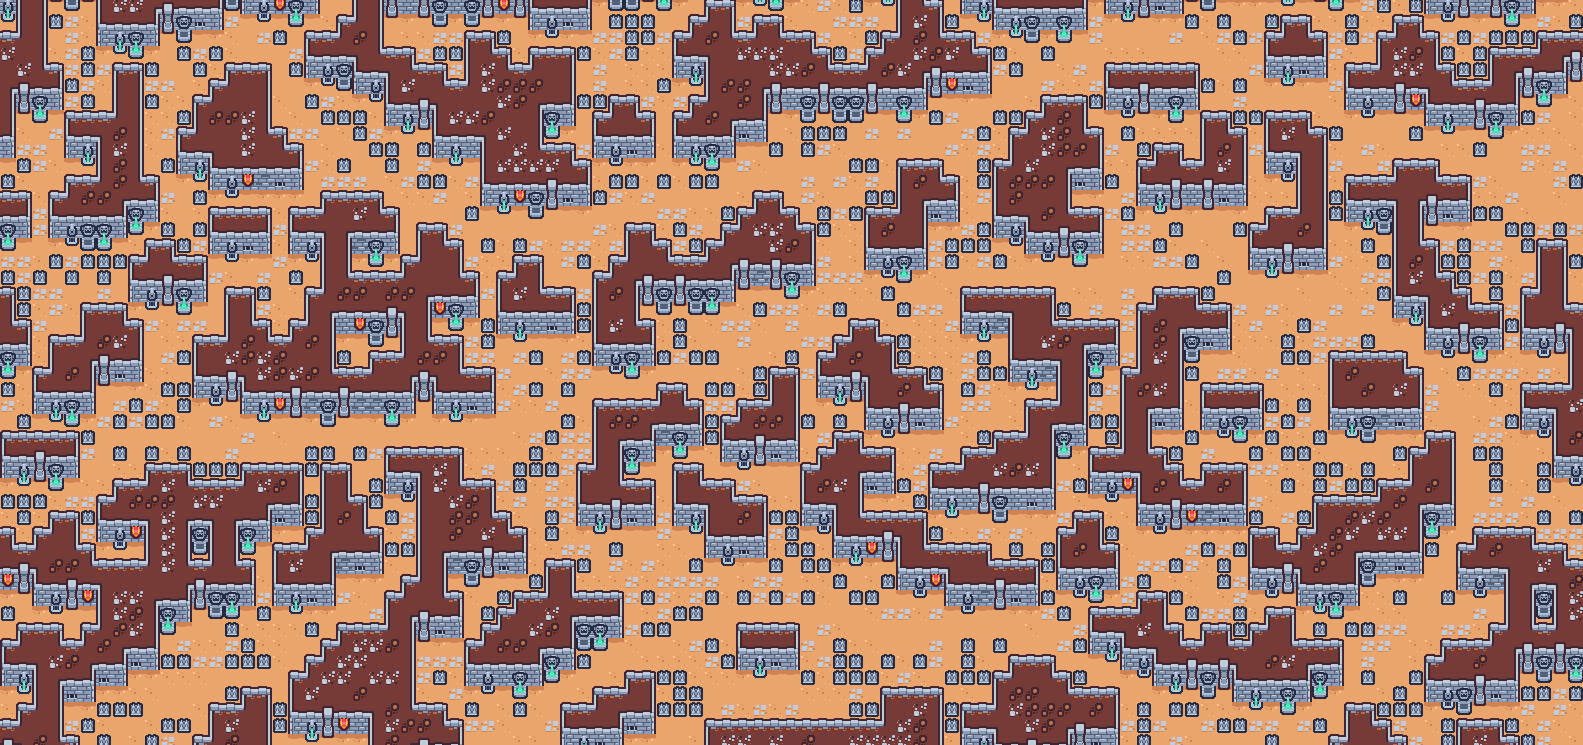 Screenshot of generated tile map